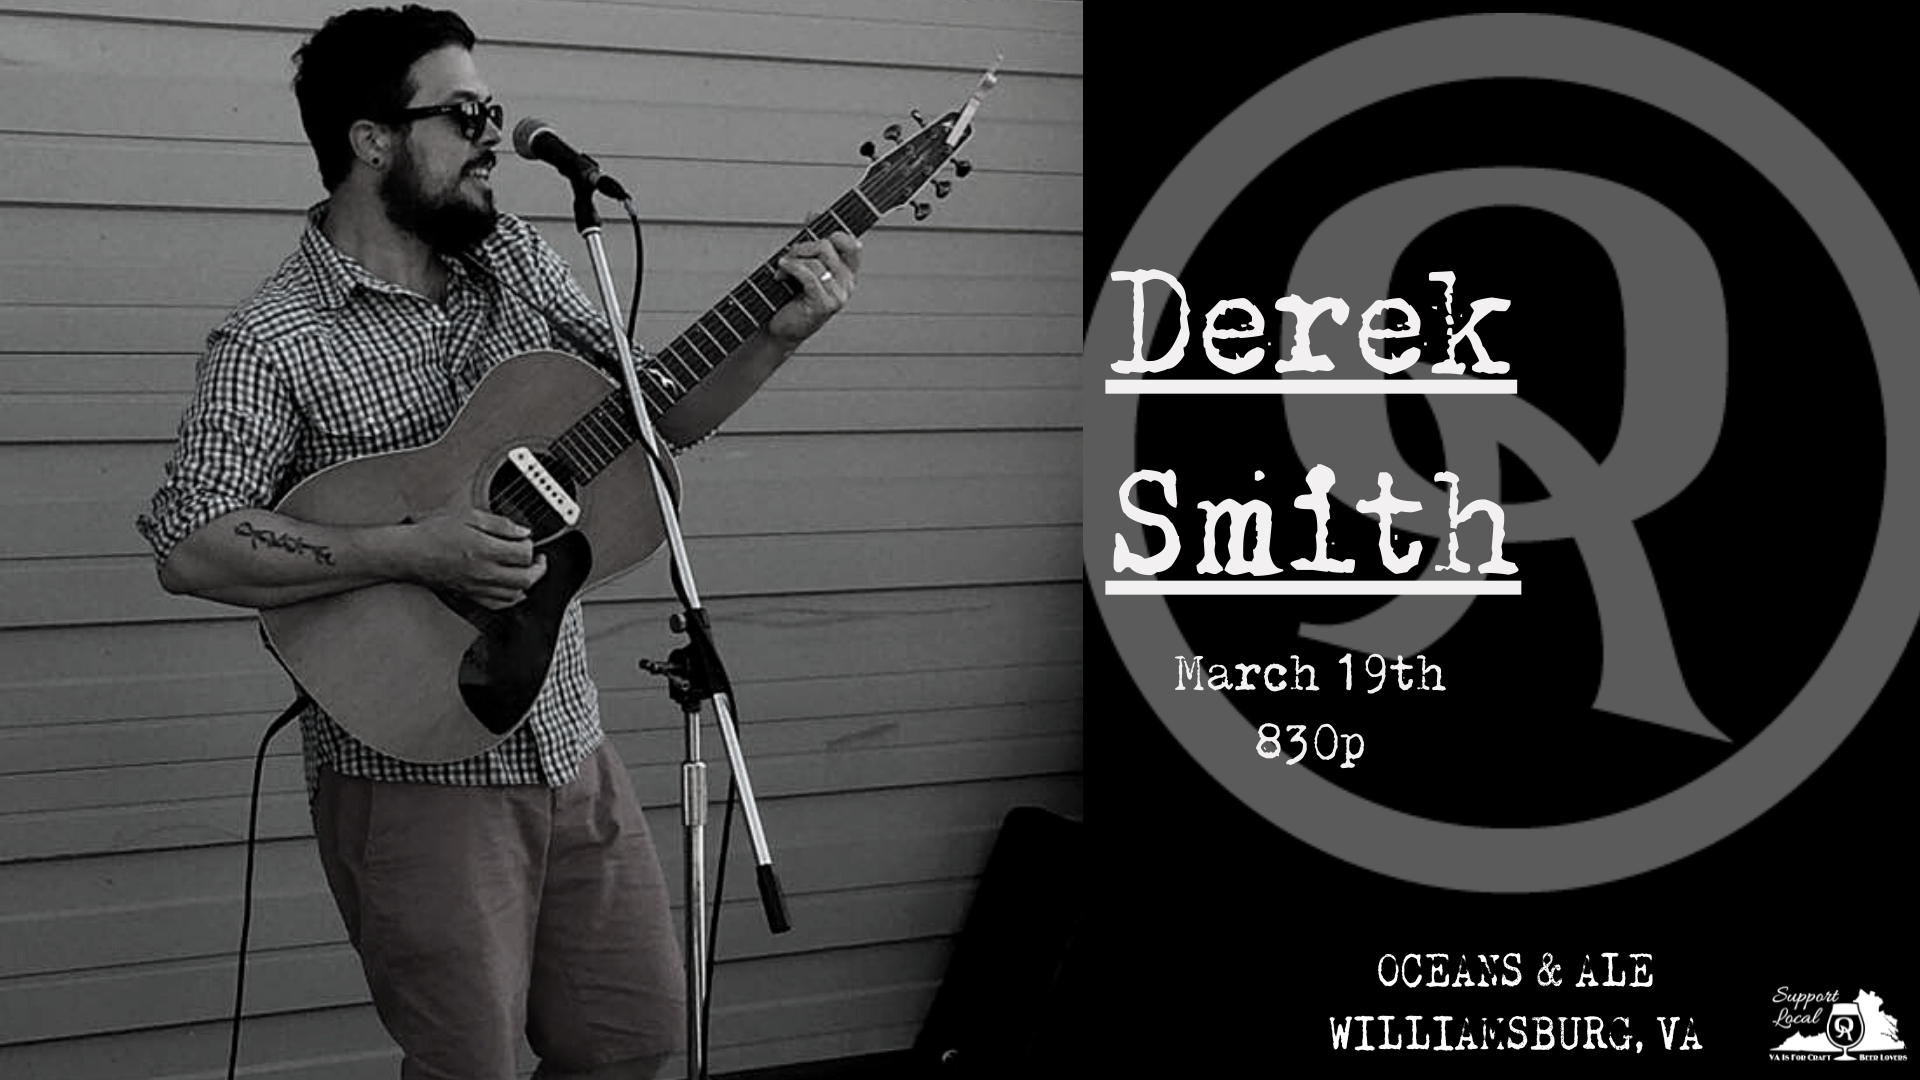 Derek Smith Music updated their cover - Derek Smith Music